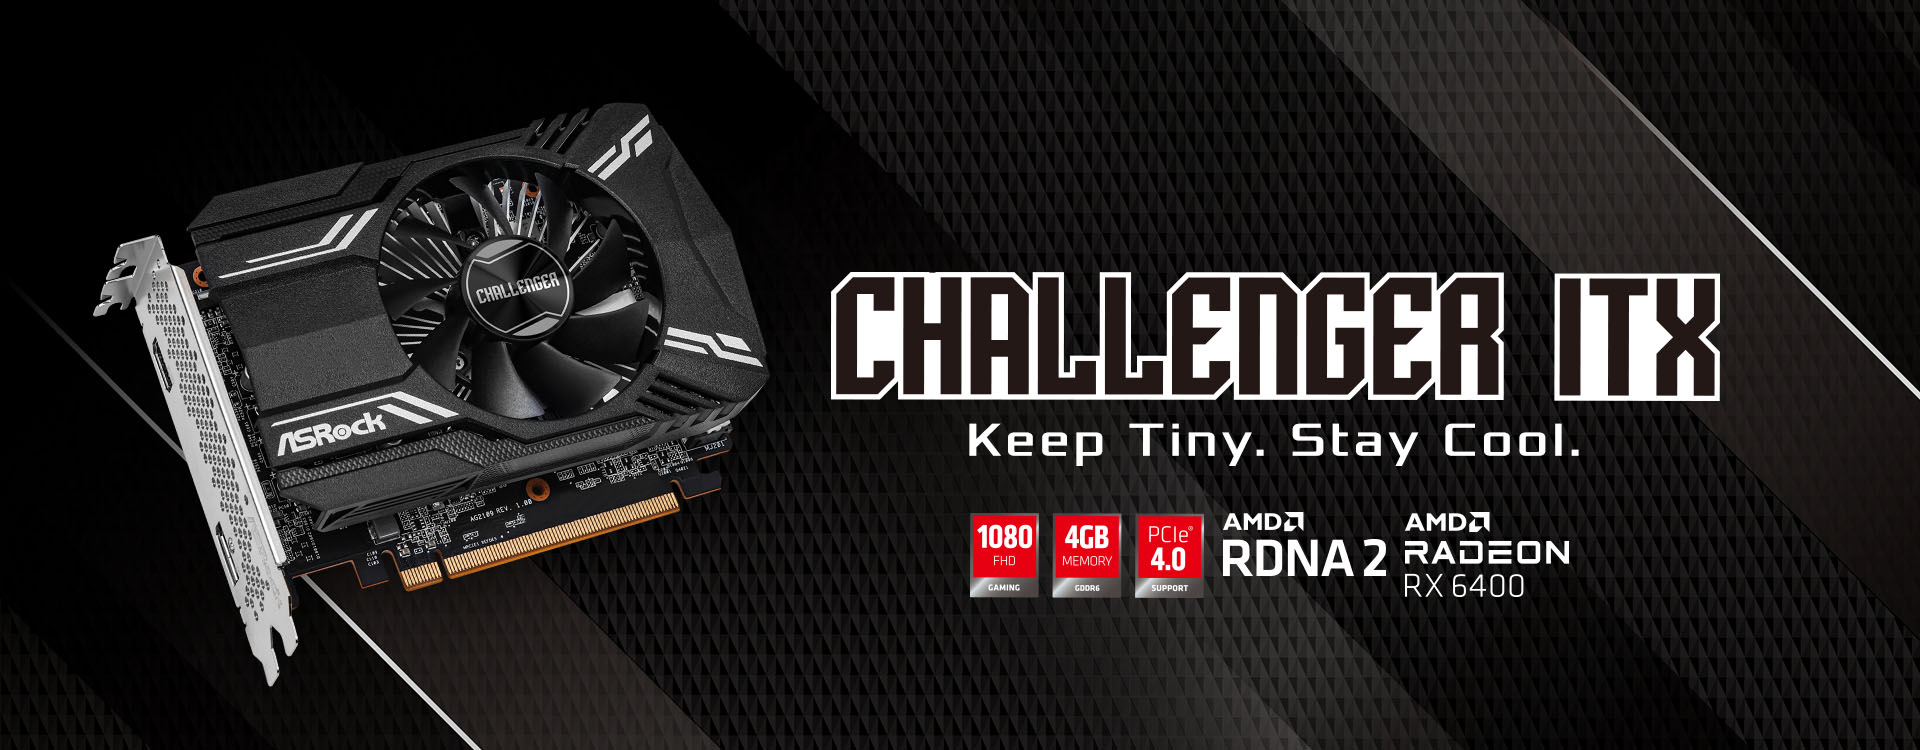 华擎科技发布AMD Radeon™ RX 6400 Challenger ITX 4GB显卡, 主流用户的优质选择